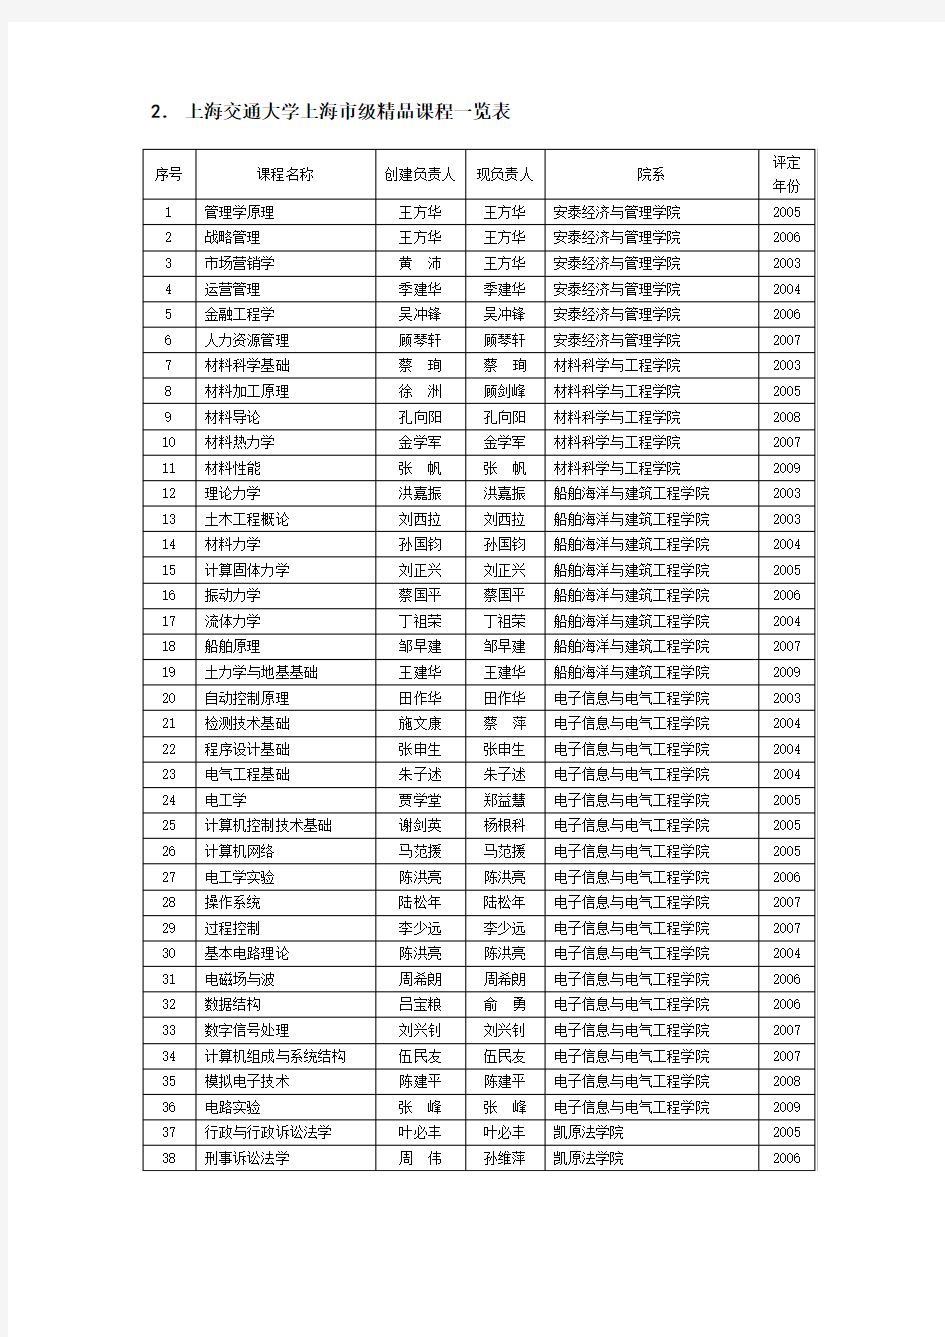 上海交通大学国家级精品课程一览表